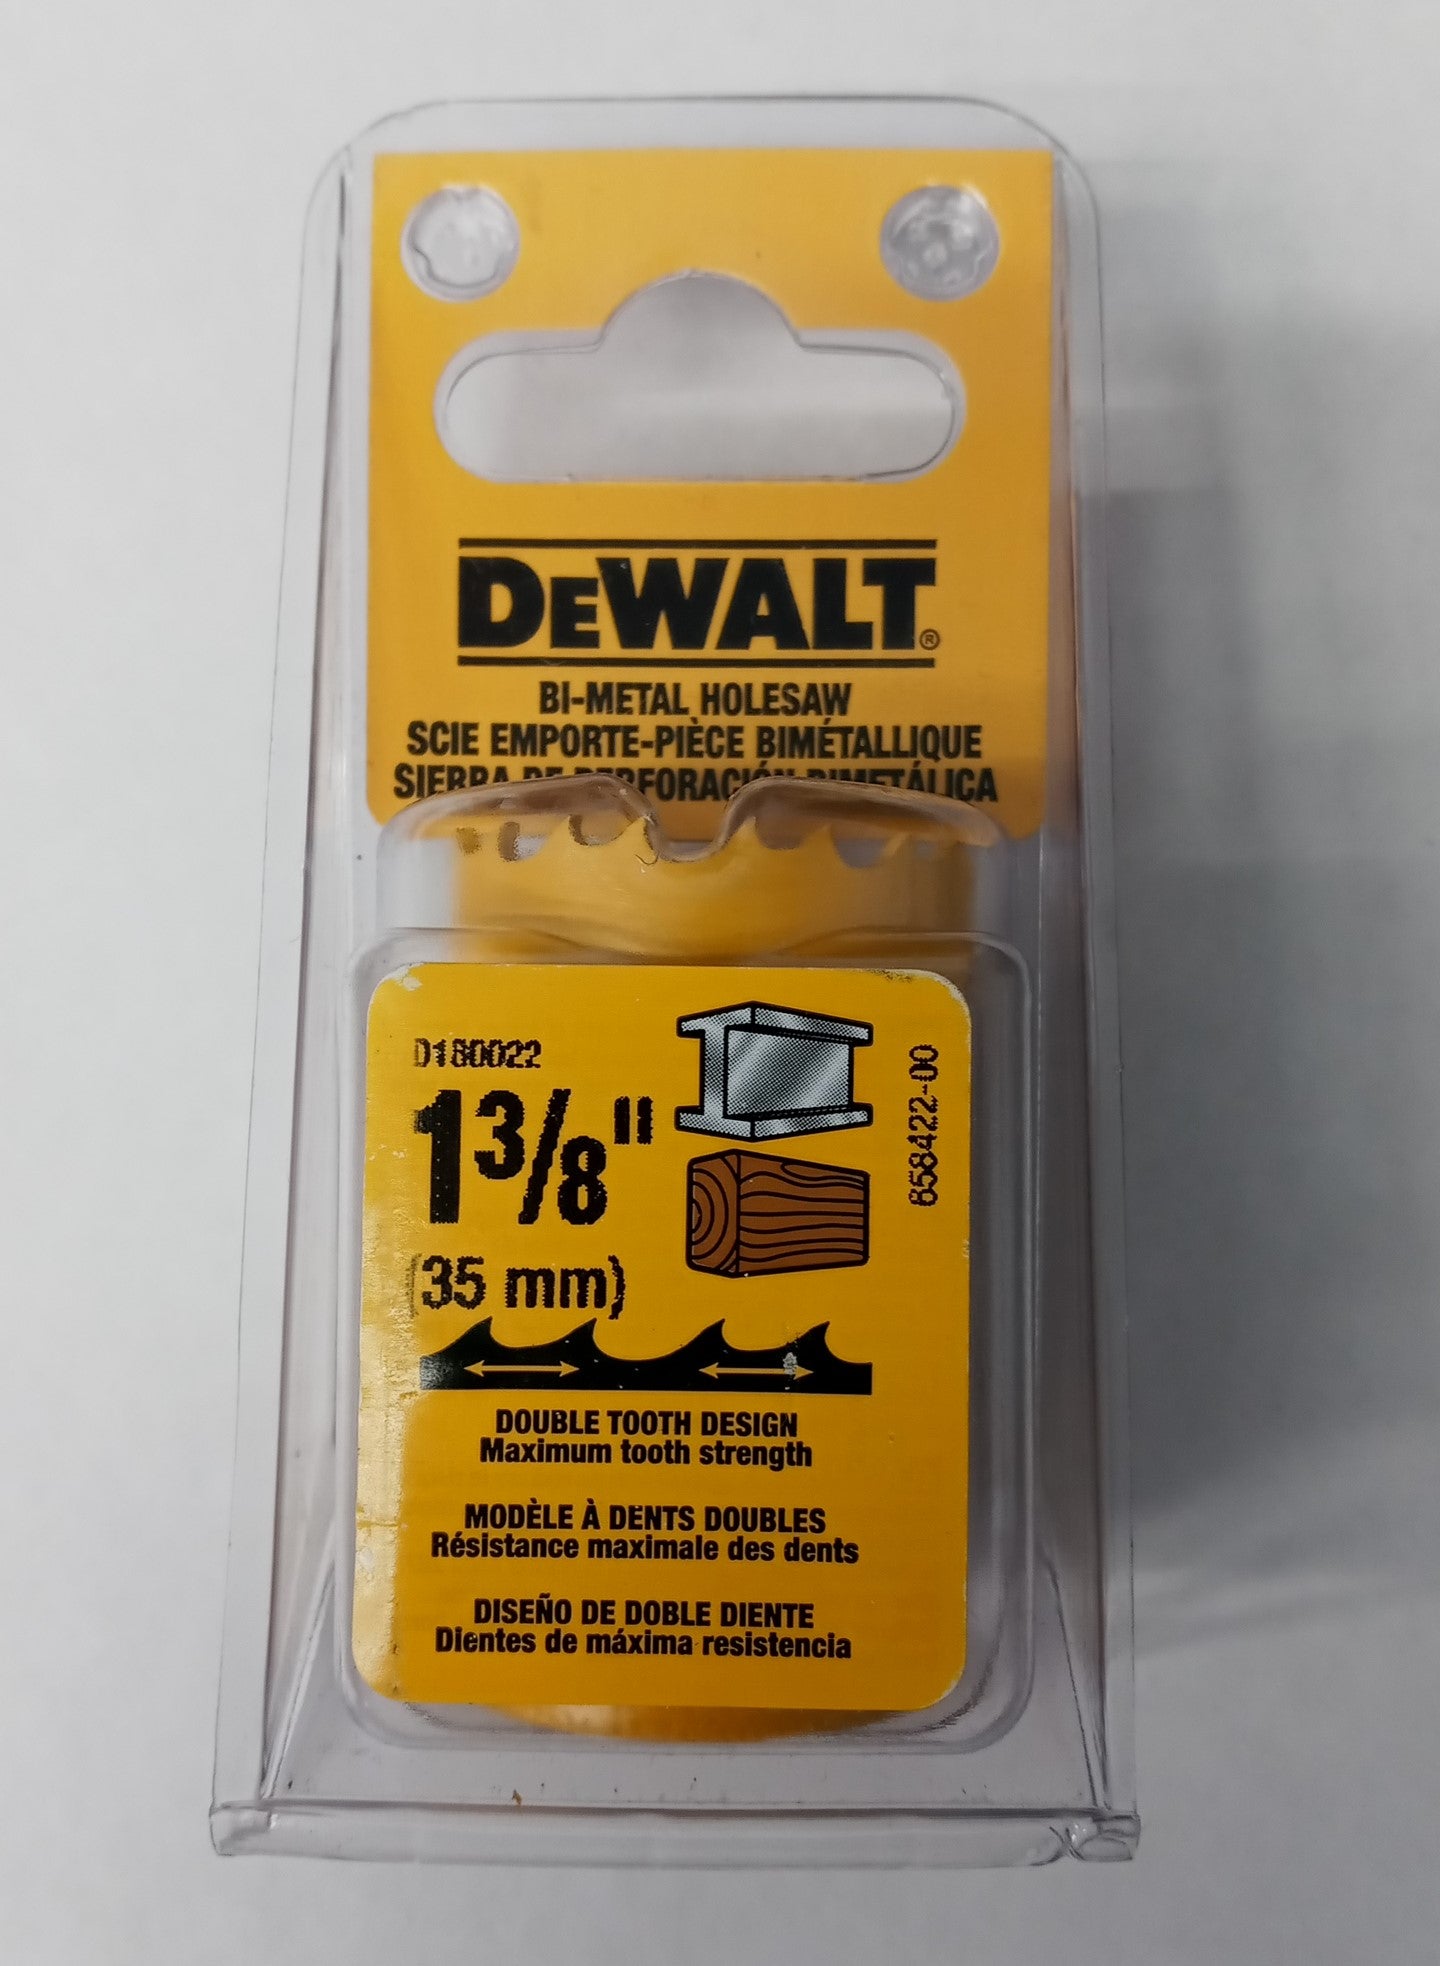 DeWalt D180022 1-3/8" (35mm) Bi-Metal Holesaw USA